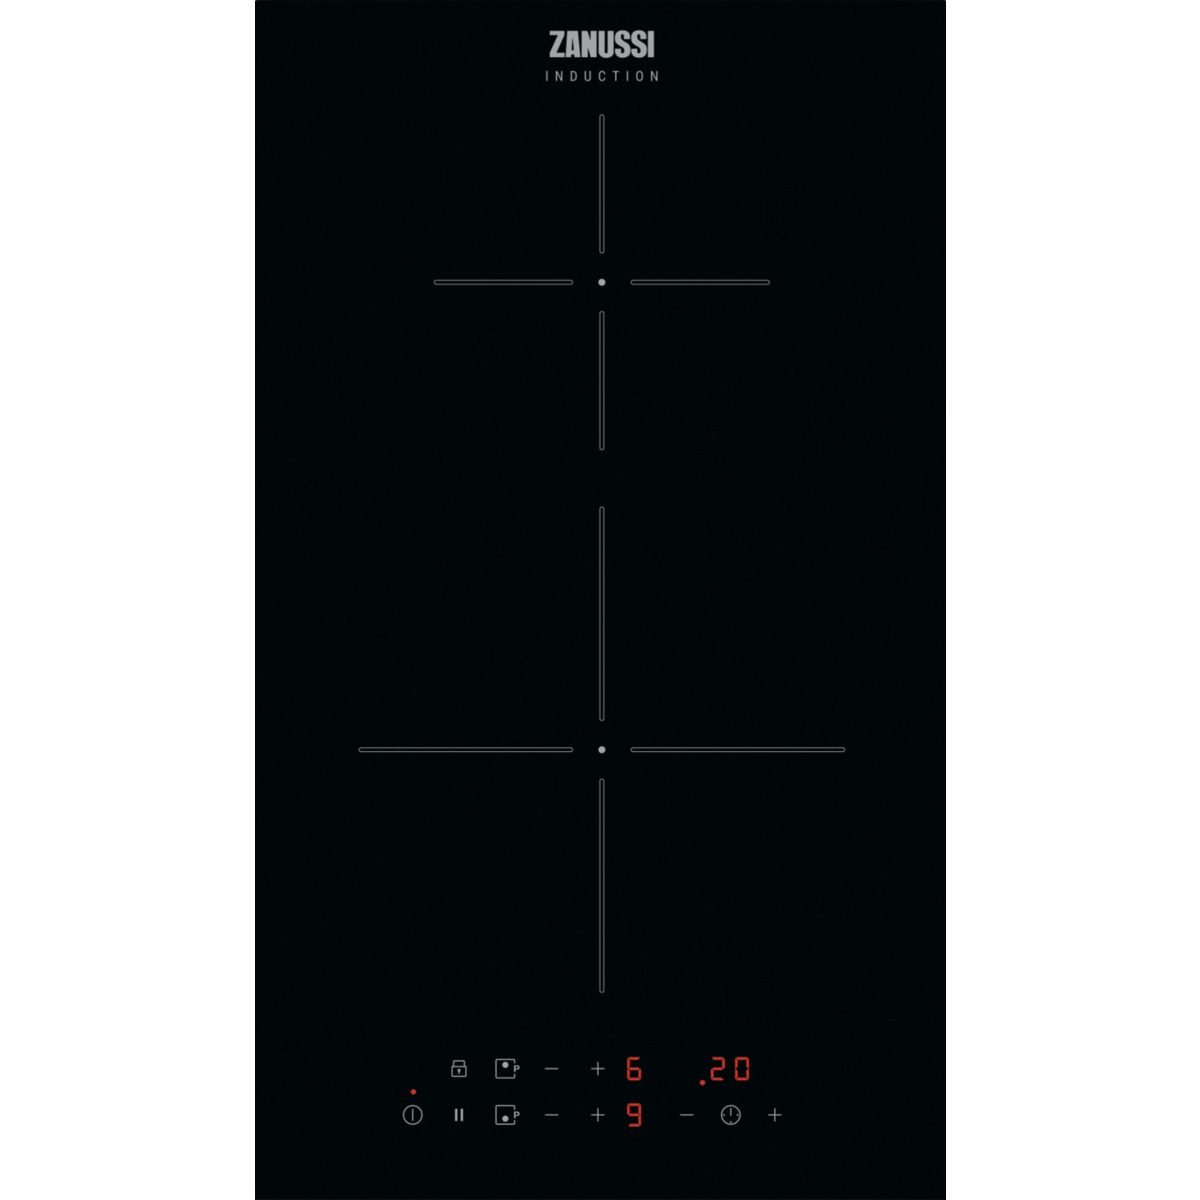 Zanussi ZITN323K Inductie inbouwkookplaat Zwart